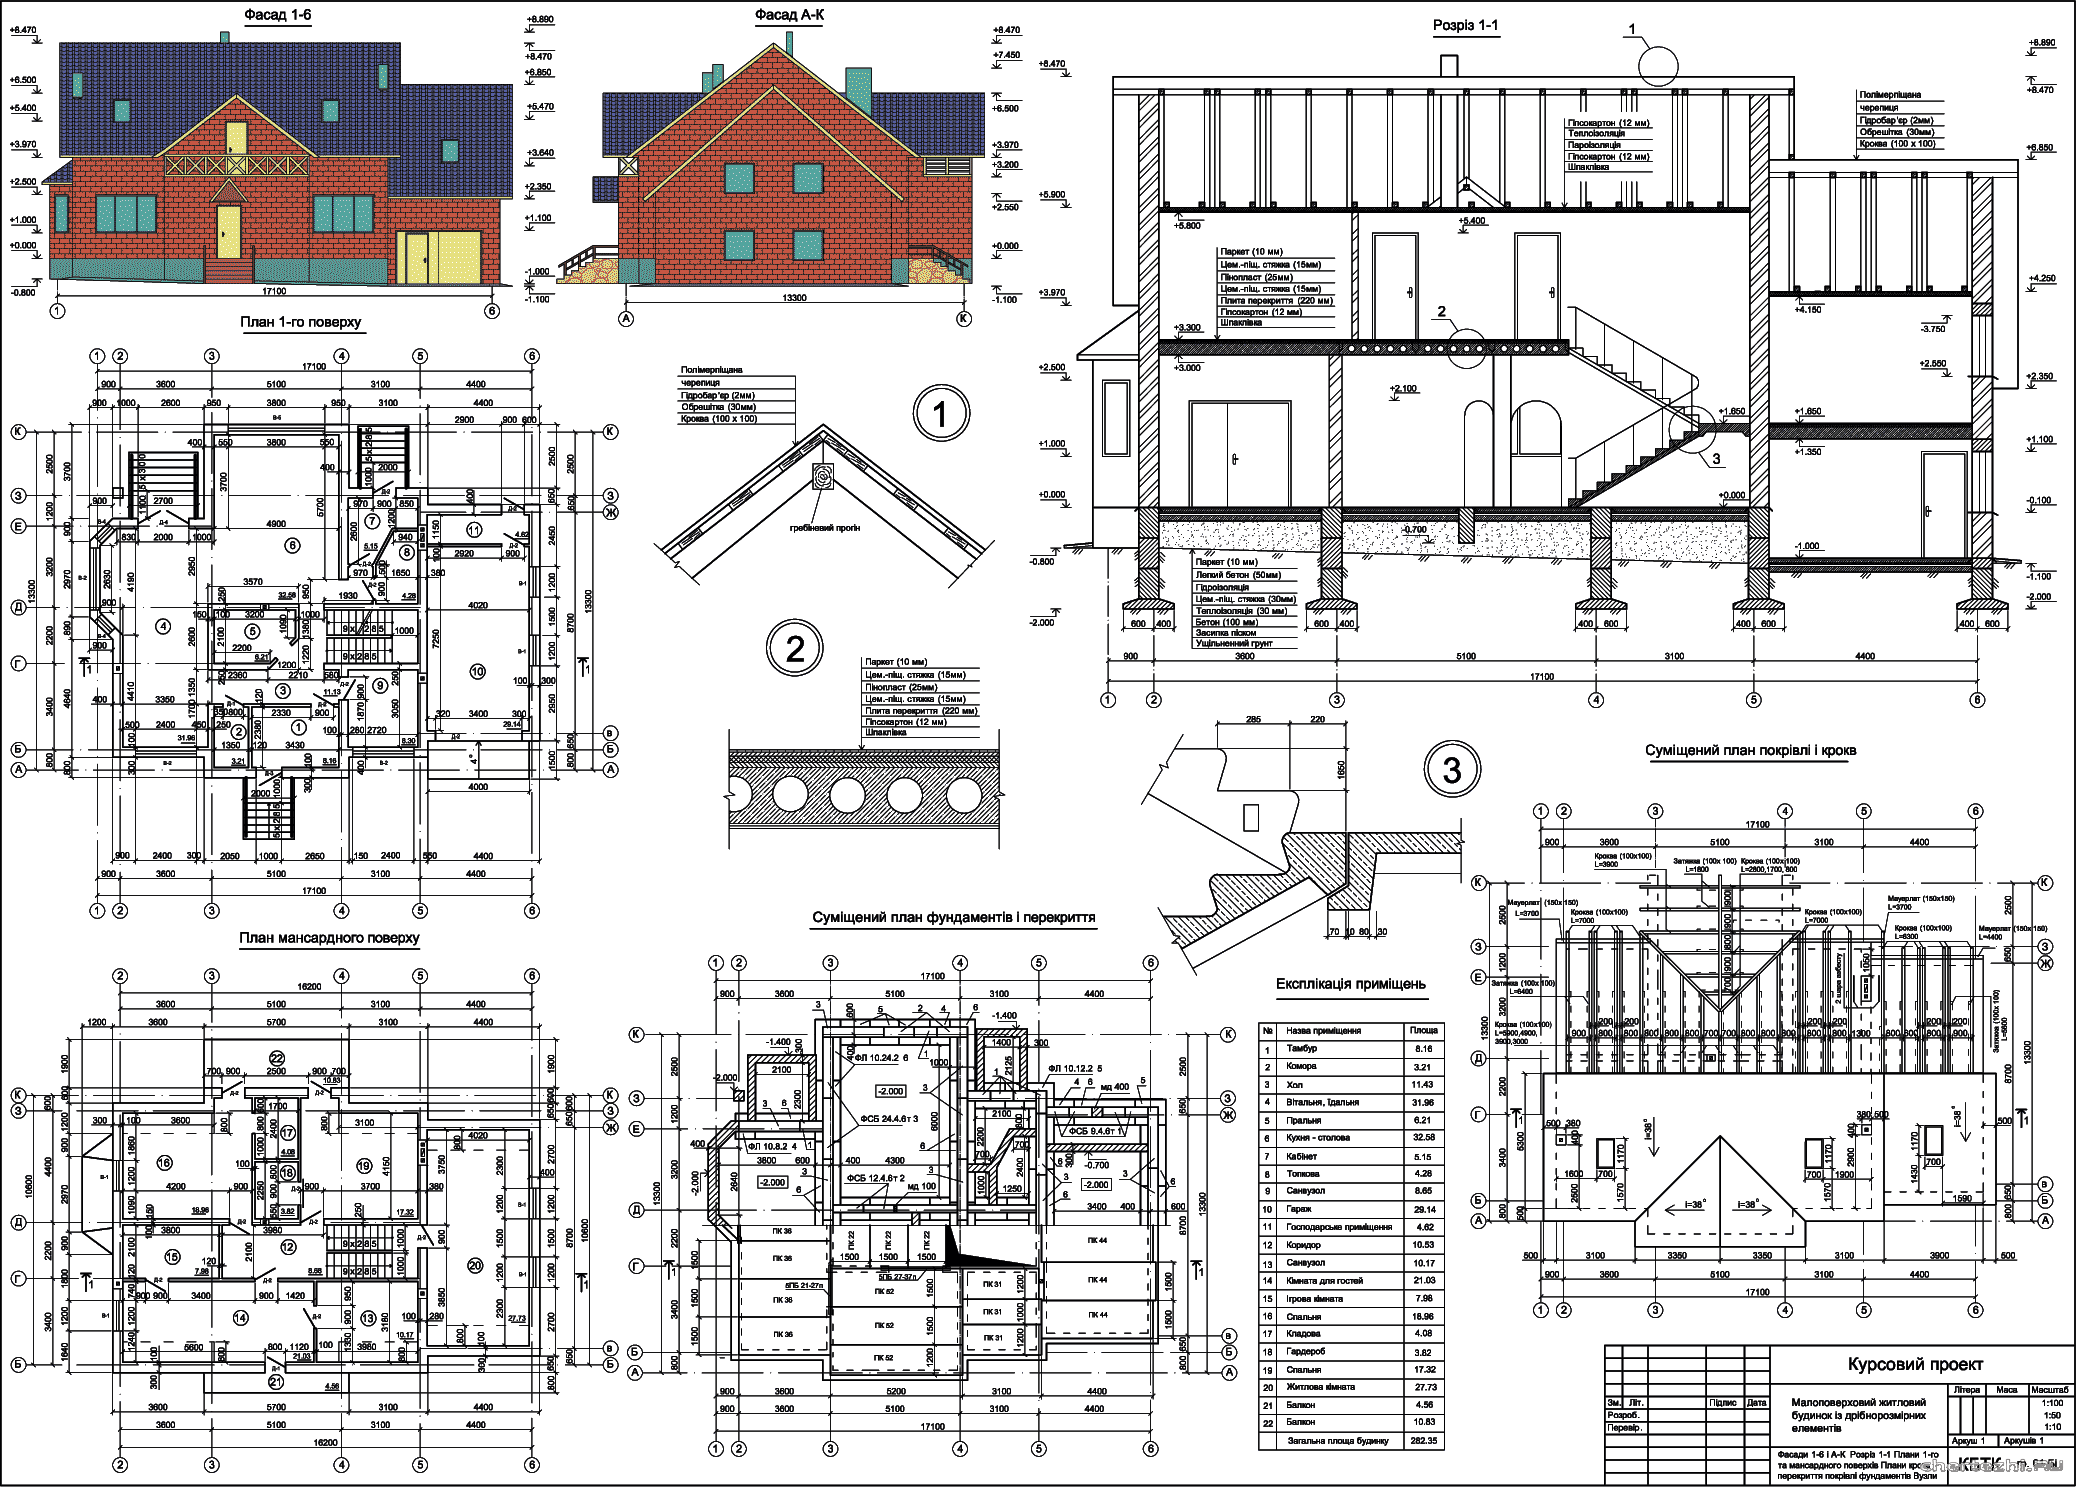 Курсовий проект (коледж) -  Одноповерховий житловий будинок з мансардним поверхом із дрібнорозмірних елементів 17,7 х 13,9 м у м. Луцьк